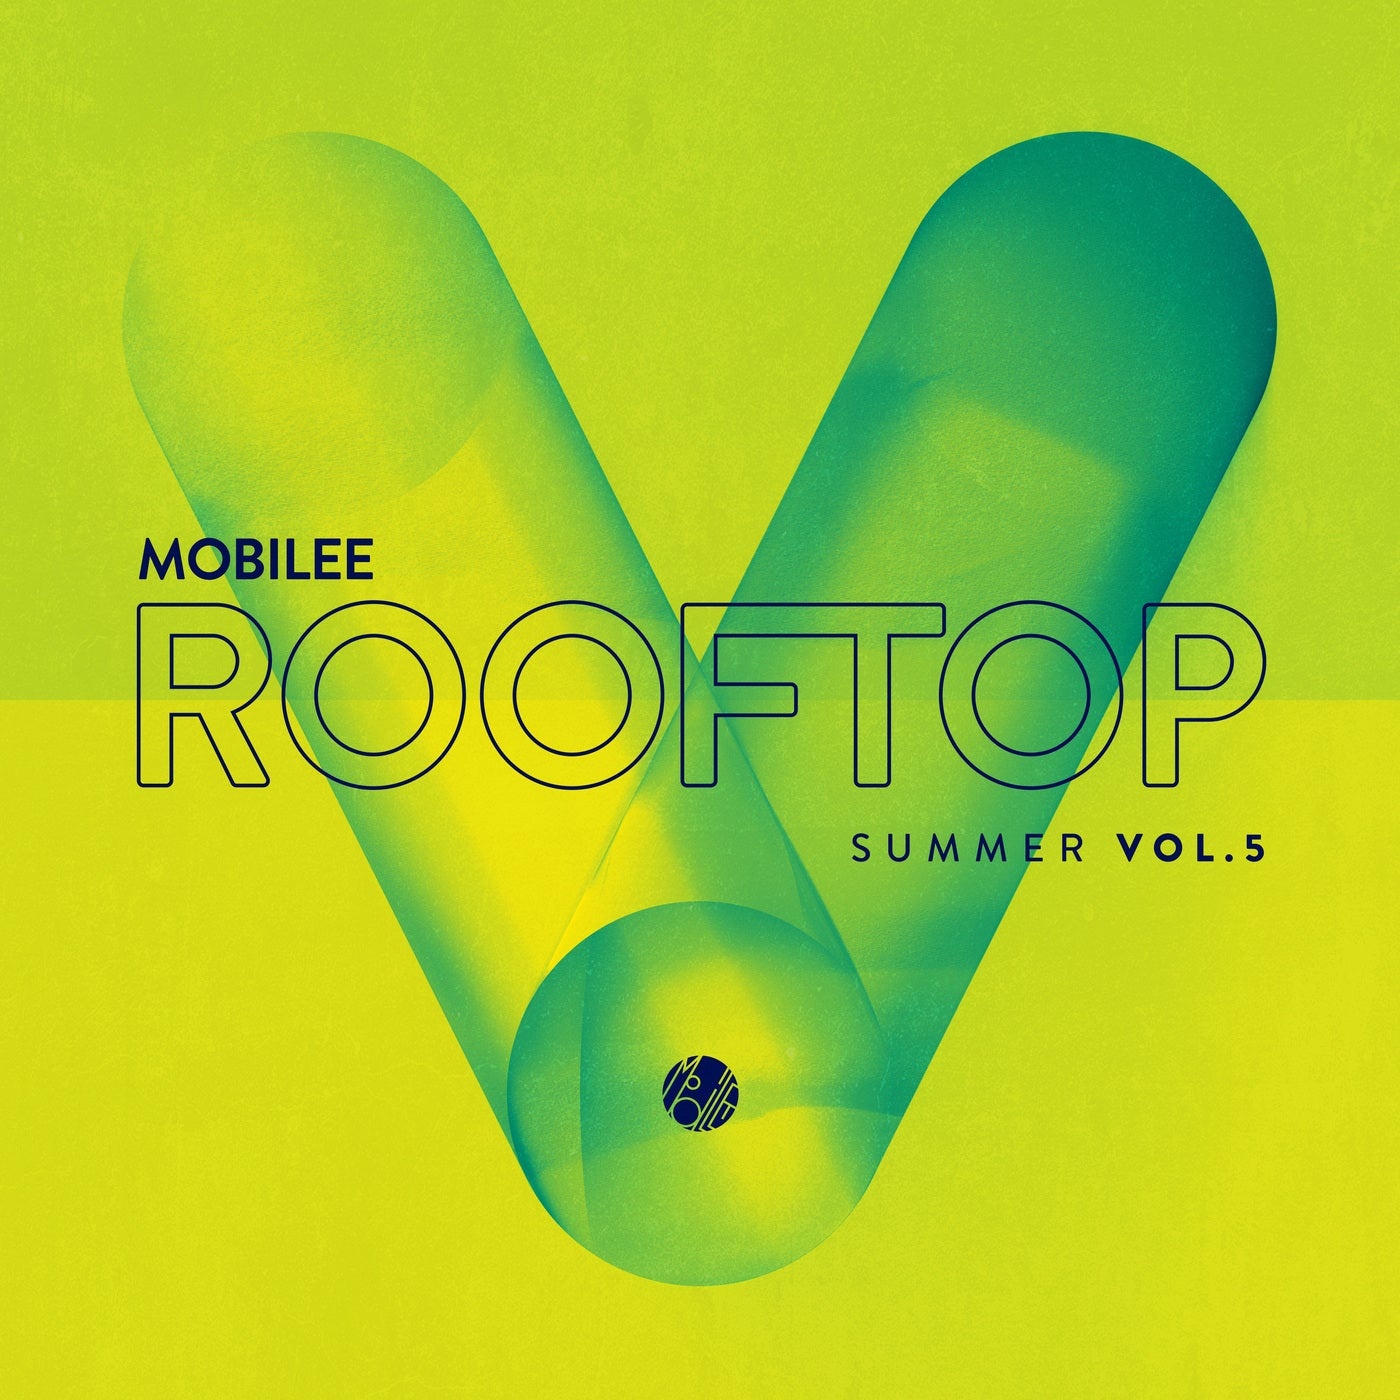 VA - Mobilee Rooftop Summer Vol. 5 [MOBILEECD036]